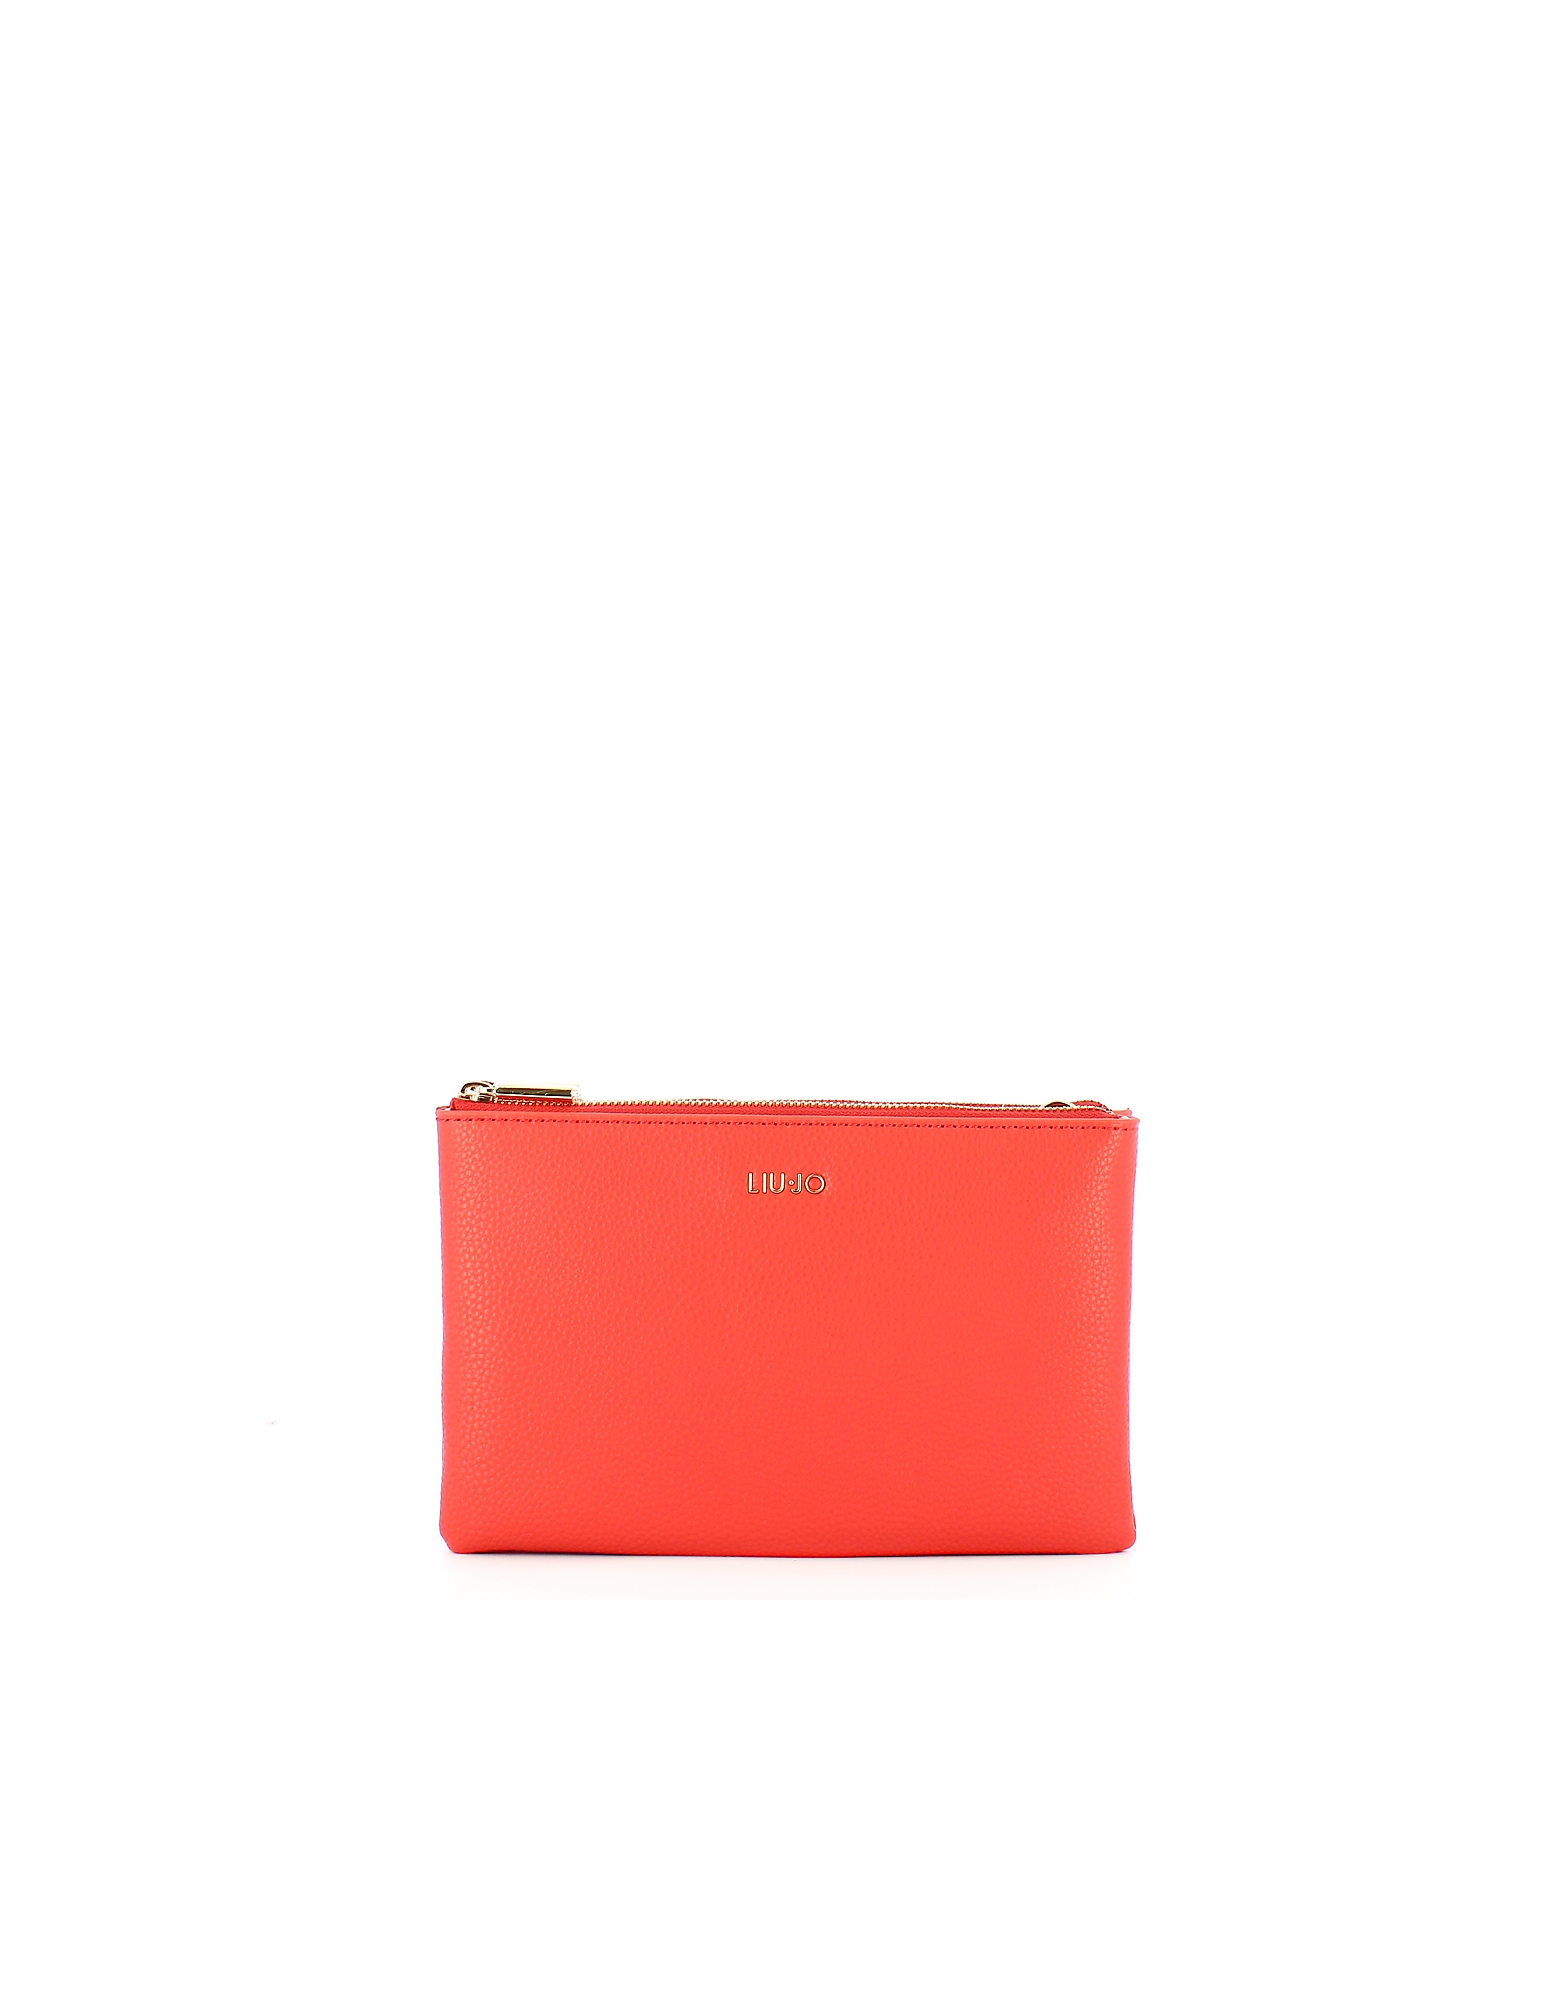 Liu •jo Designer Handbags Women's Orange Mini Bag